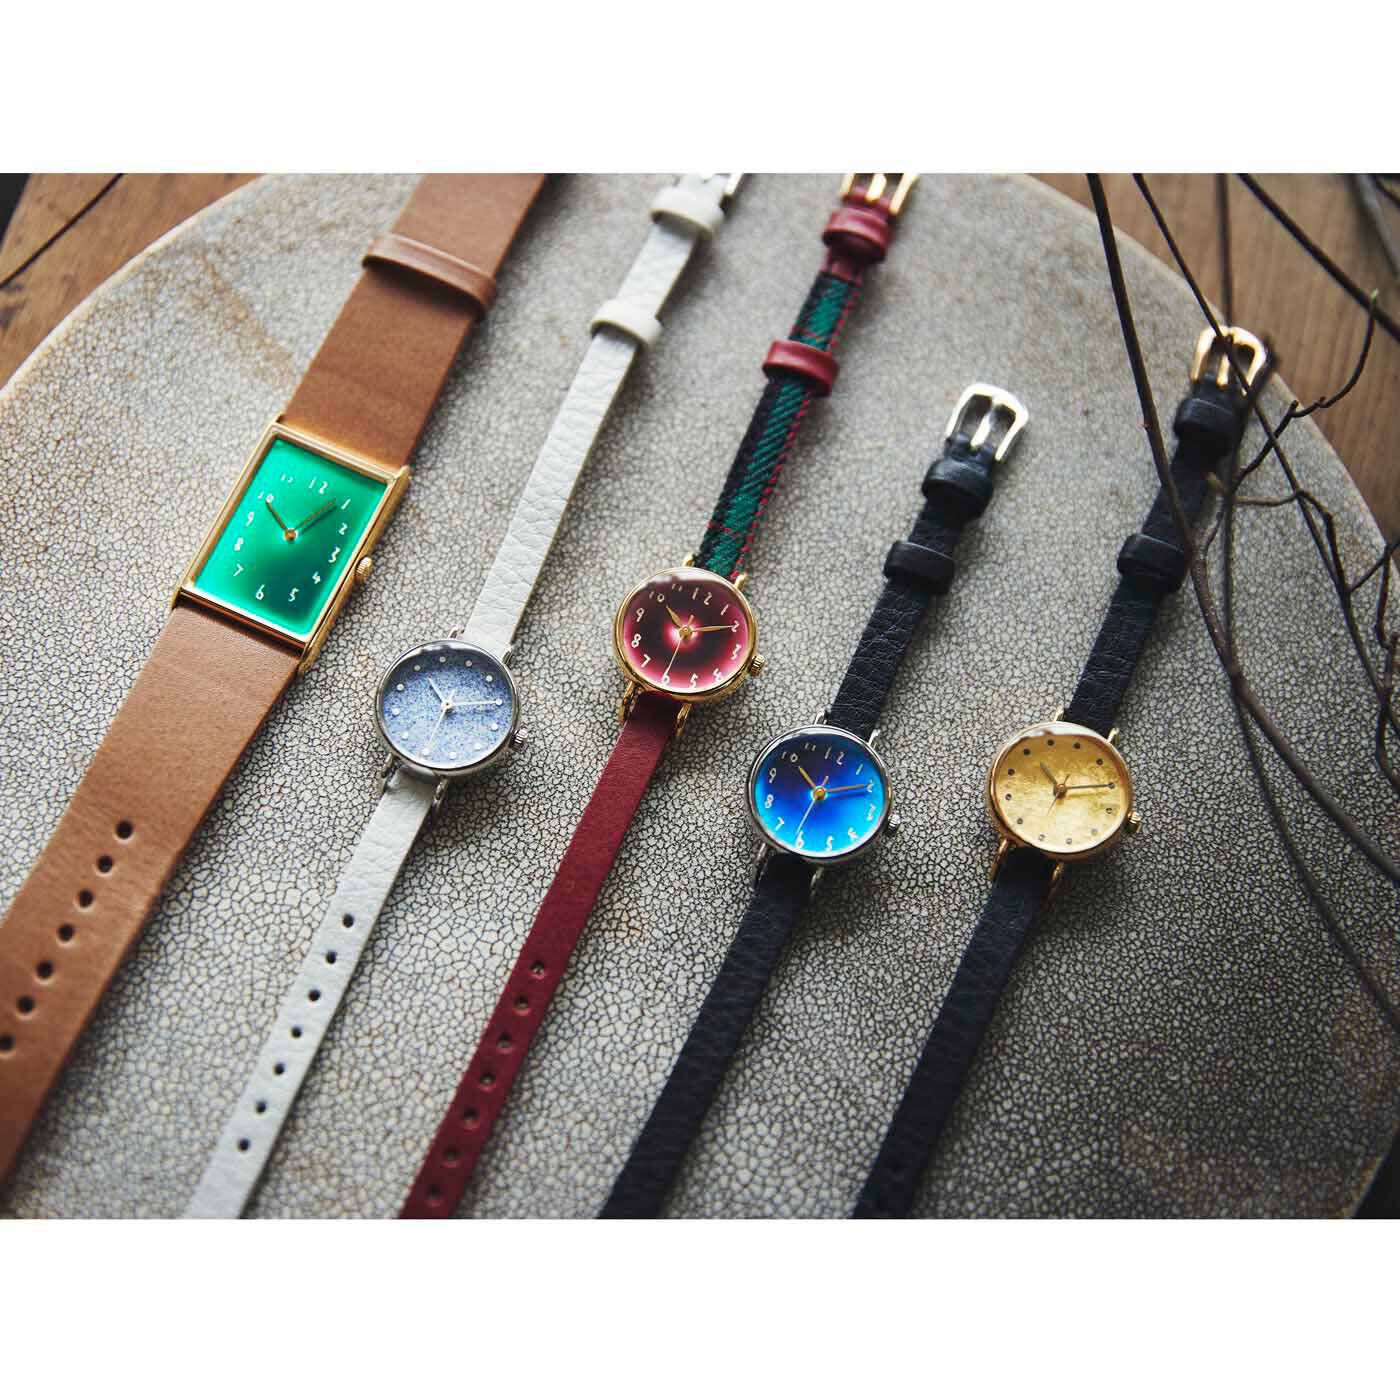 金沢の時計職人が手掛けた 聖なる泉の翠色に見惚れる腕時計〈ブラウン